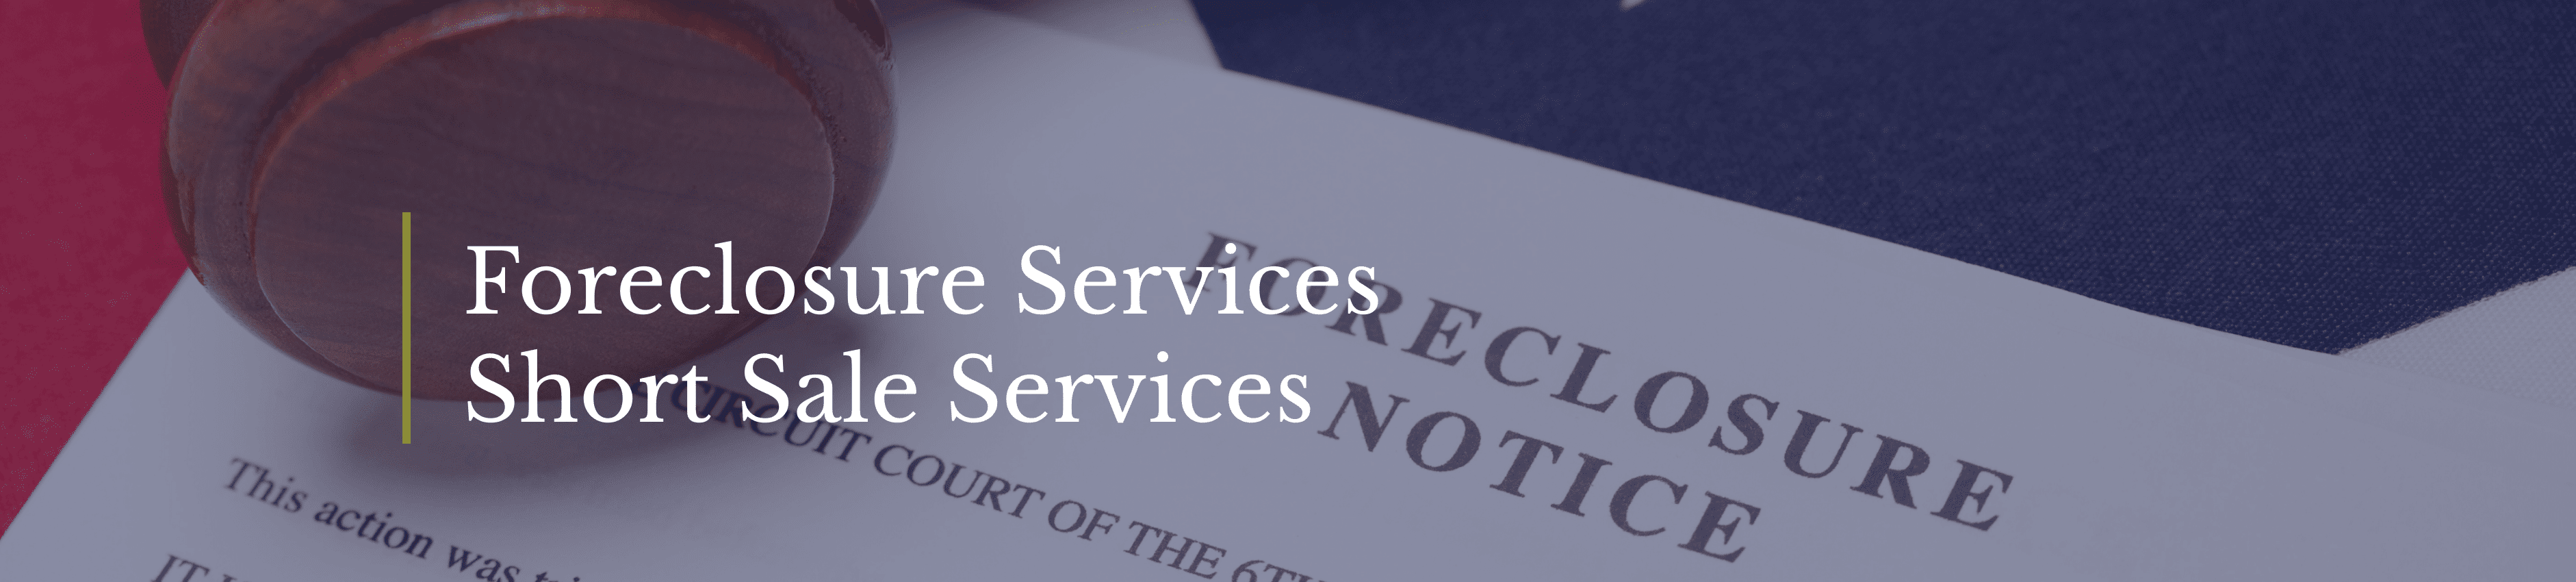 Foreclosure Services Short Sale Services